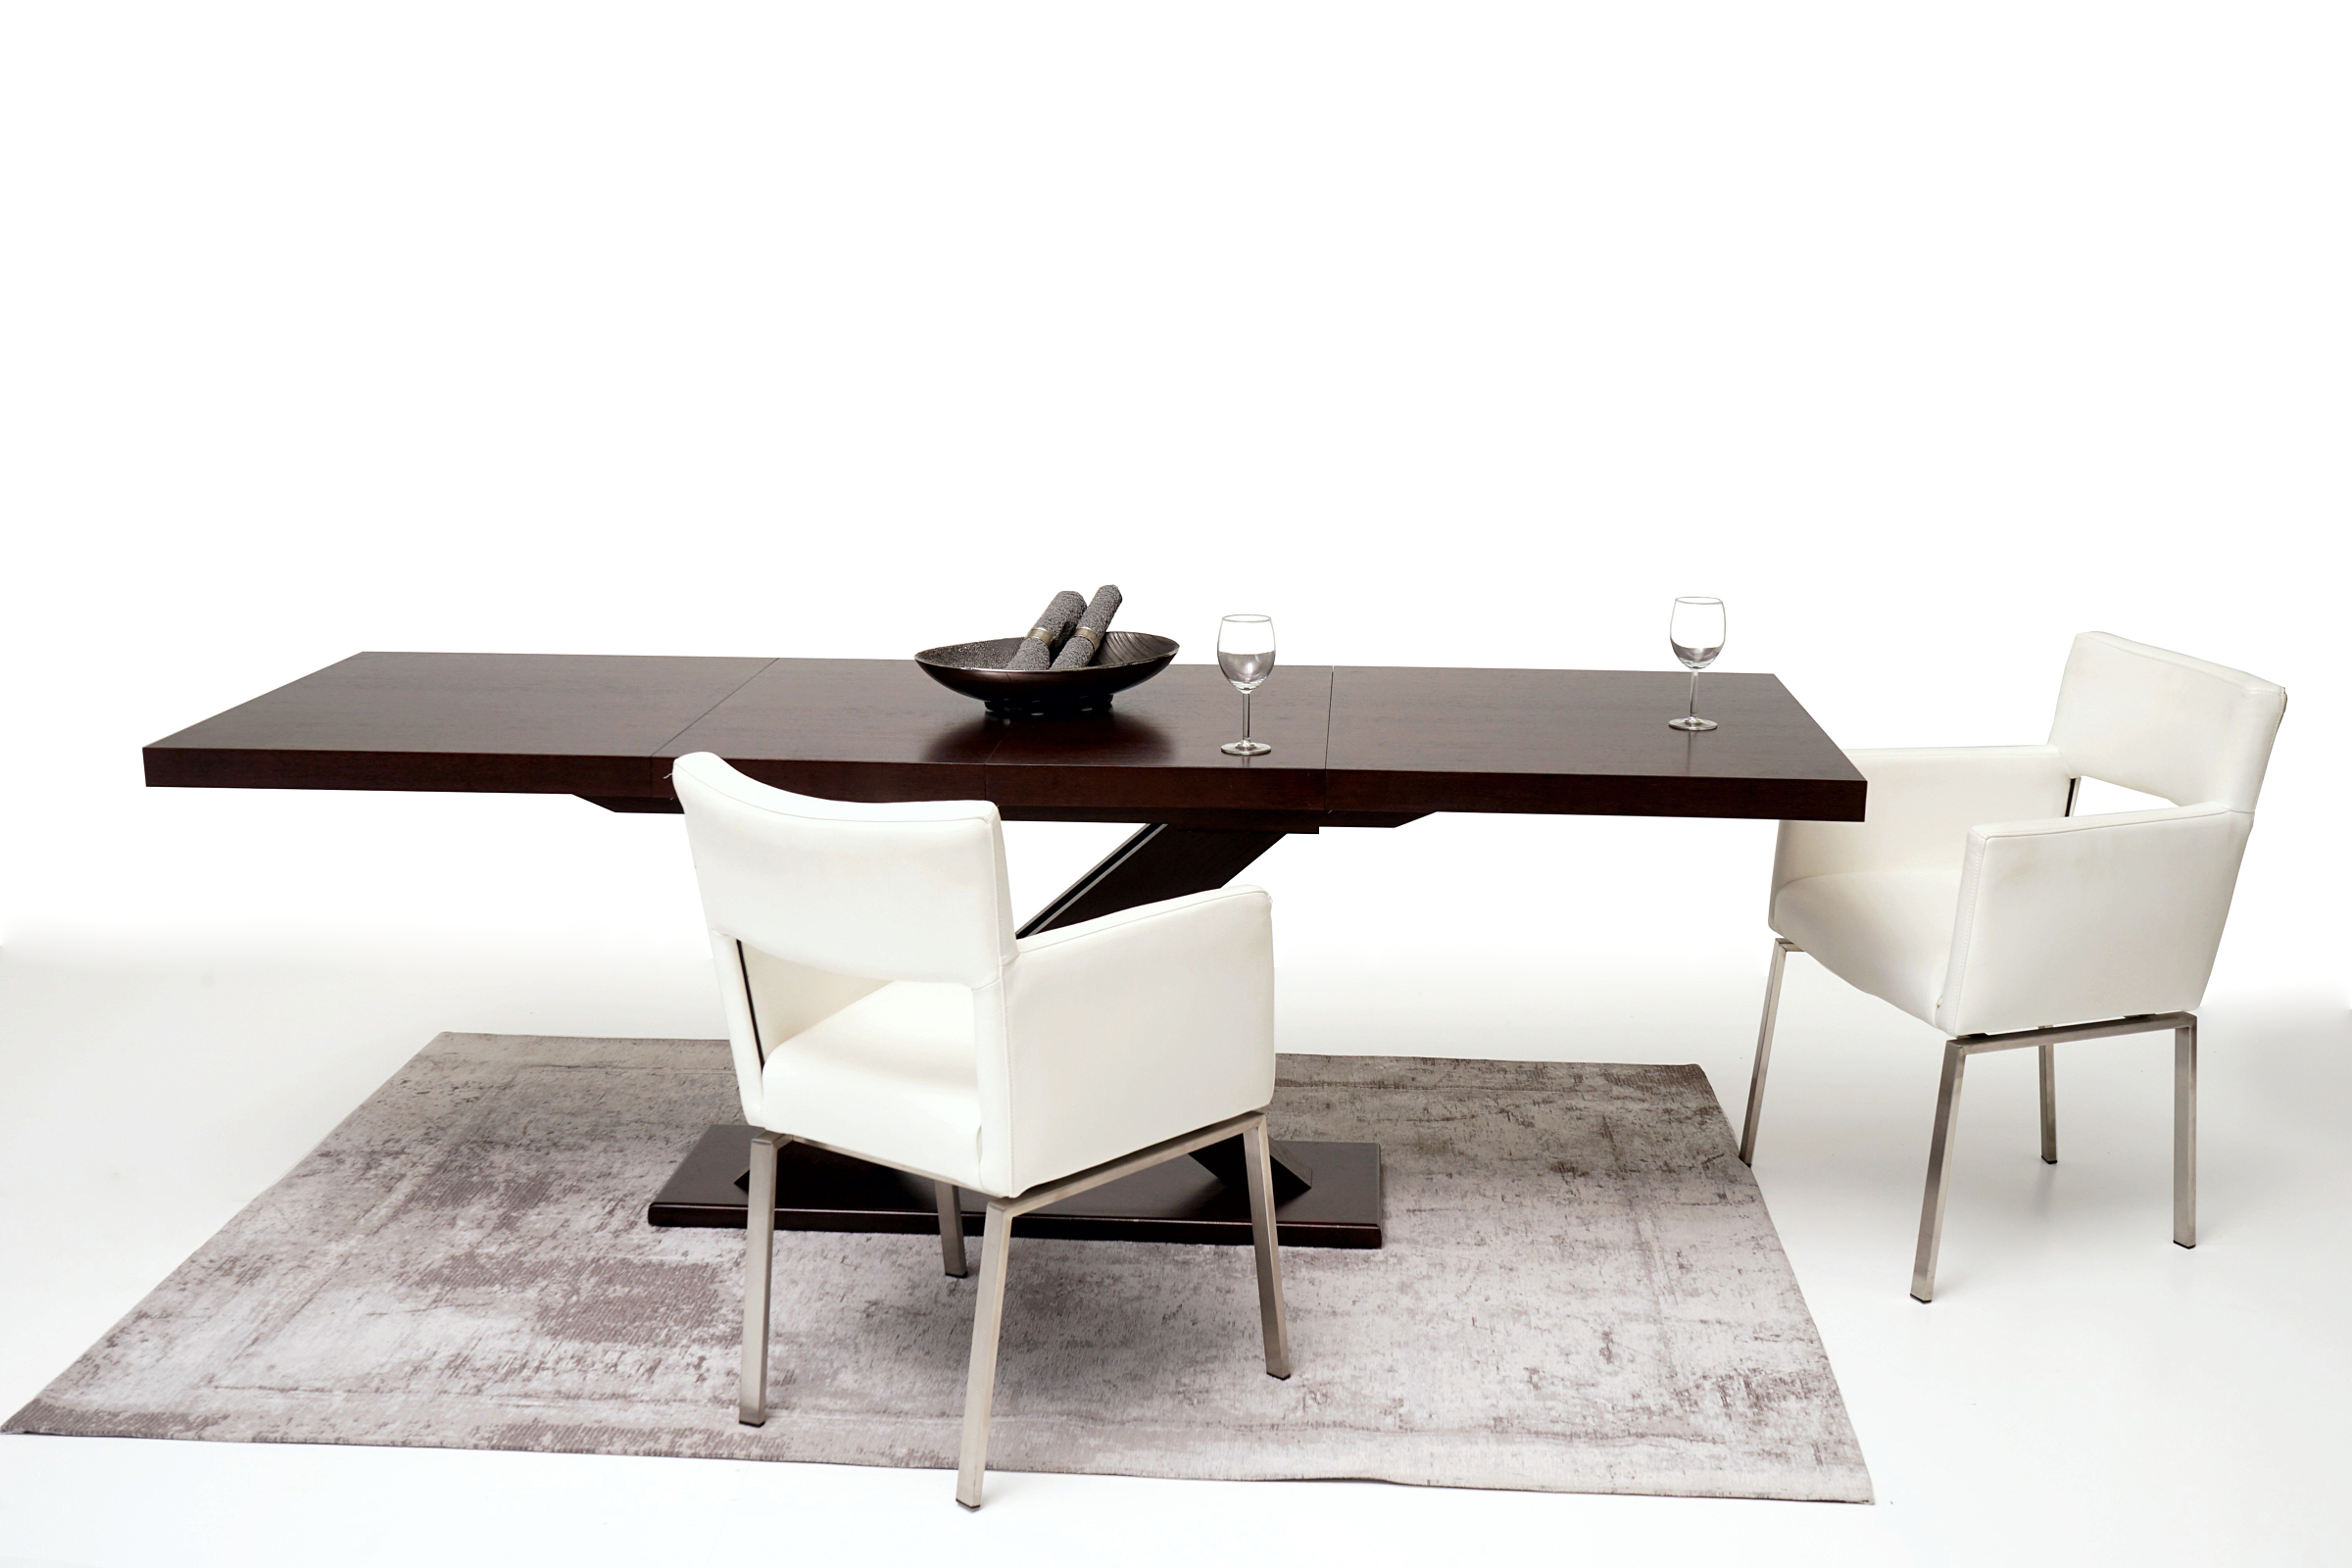 Sabine pomysł aranżacja jadalni salonu w stylu modern classic duży stół w kolorze wenge brązowy białe nowoczesne krzesła skórzane na metalowych nogach ze stali nierdzewnej polerowanej brązowy dywan